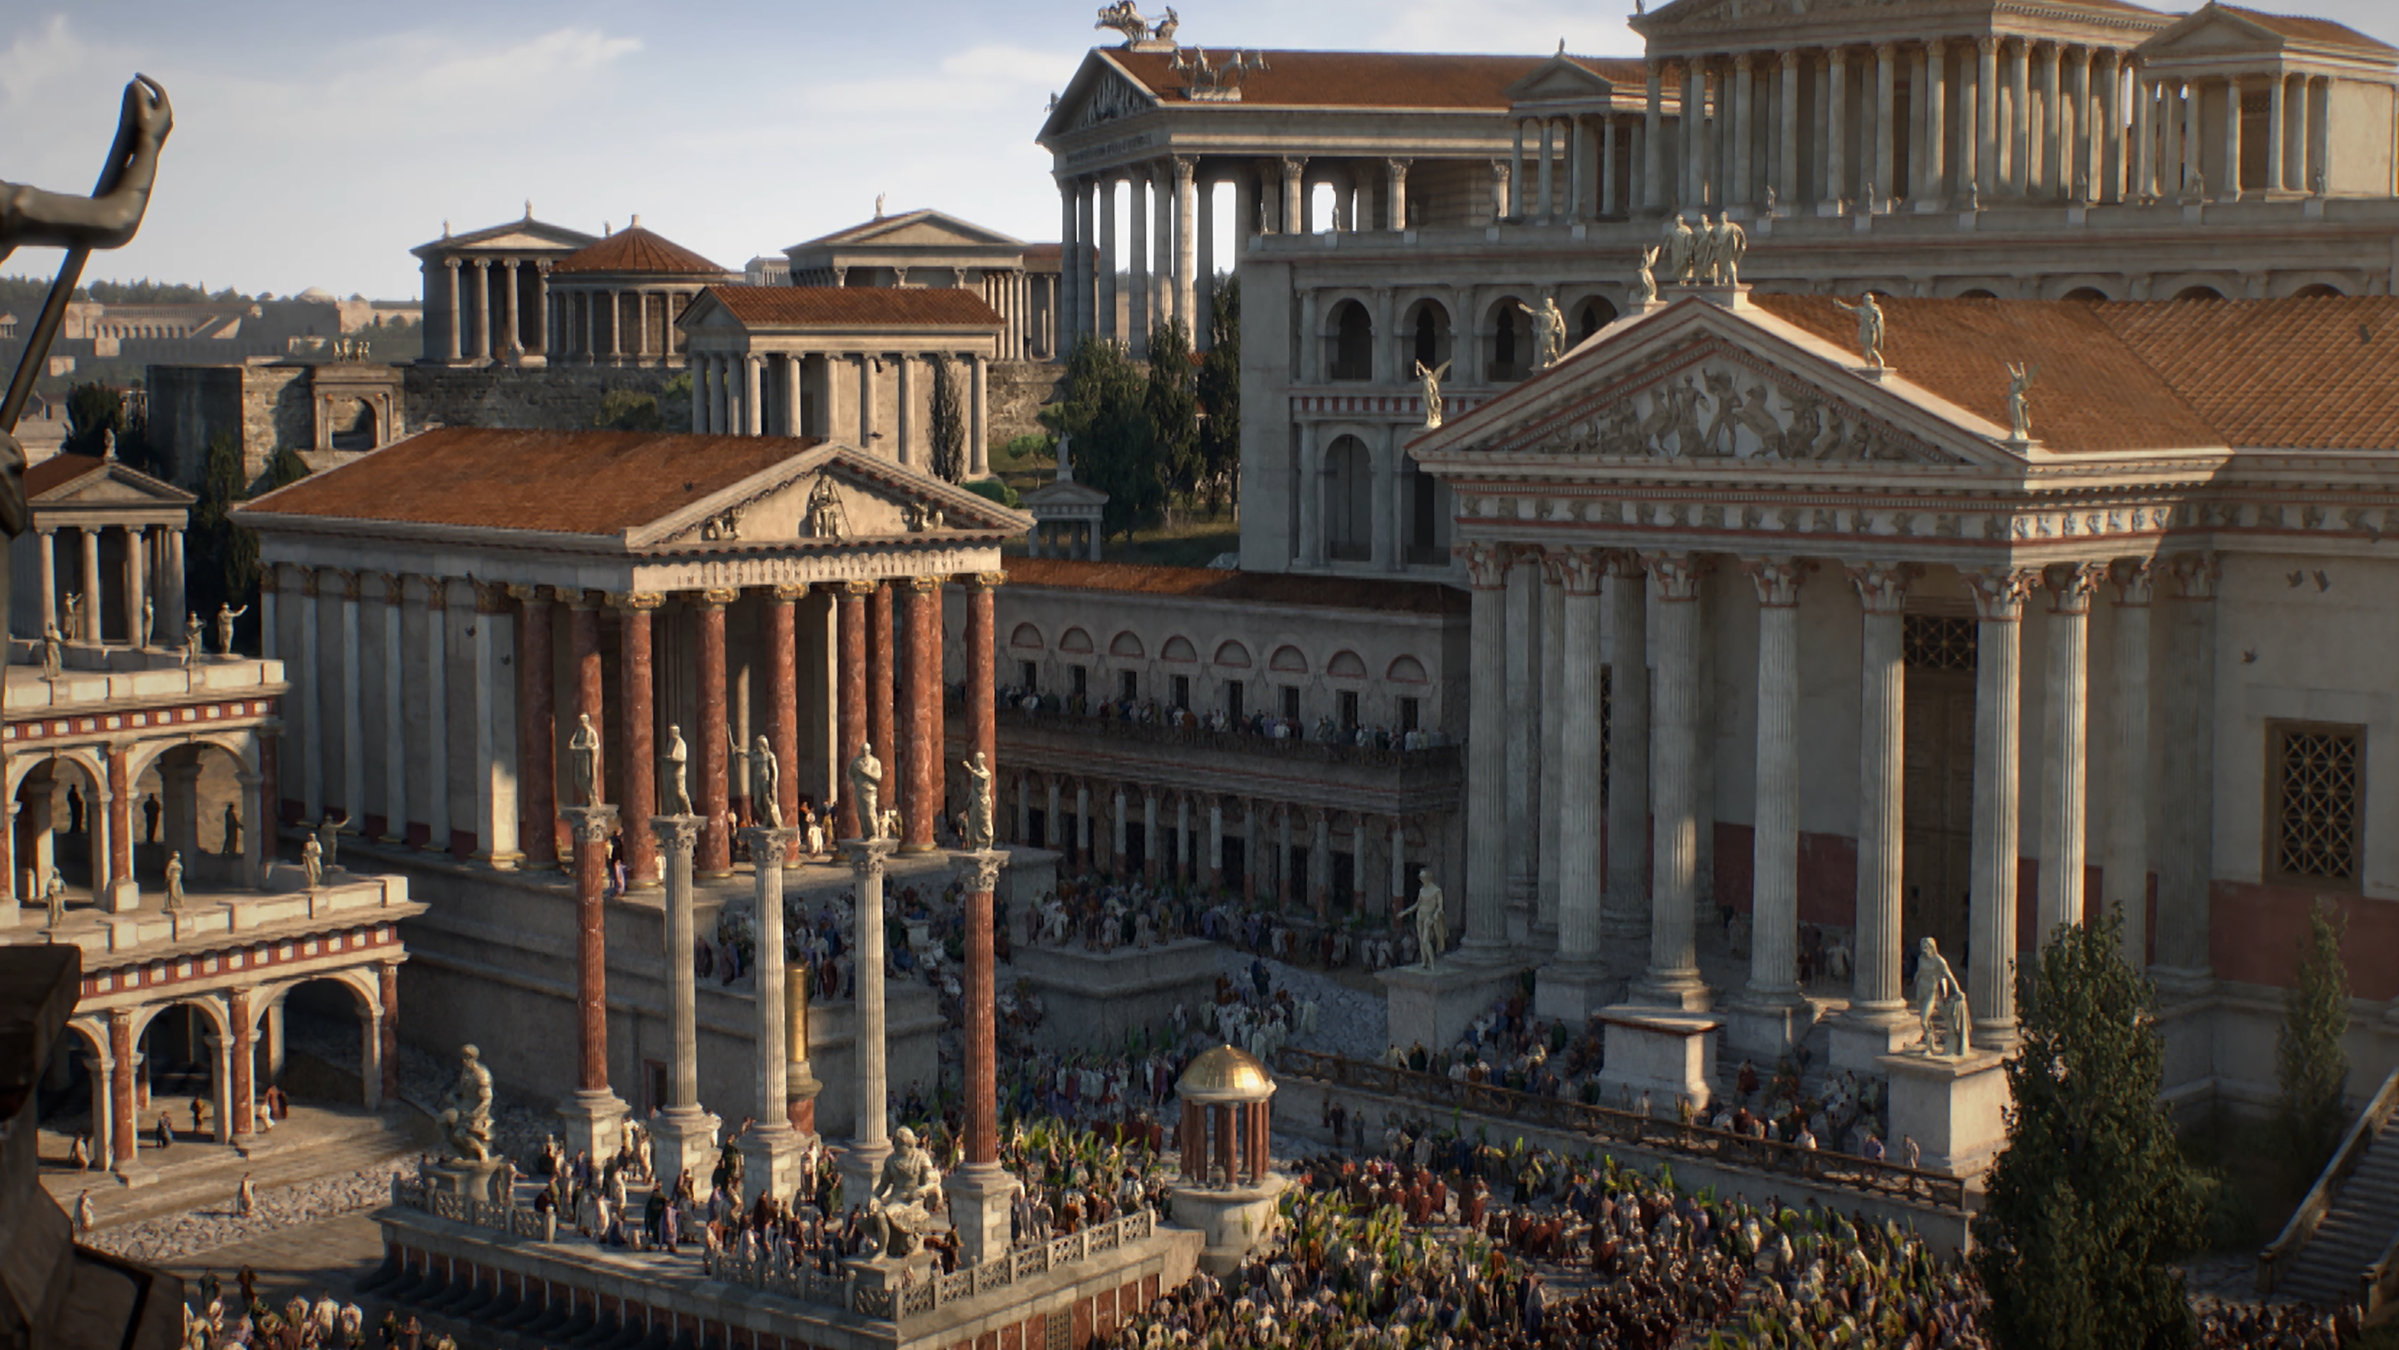 "Die glorreichen 10 - Die unwiderstehlichsten Städte der Geschichte": Ein computeranimiertes Bild des antiken Roms. In einer Draufsicht ist der Kapitolshügel zu sehen. Auf diesem stehen zahlreiche große Tempel mit riesigen Säulenfassaden.